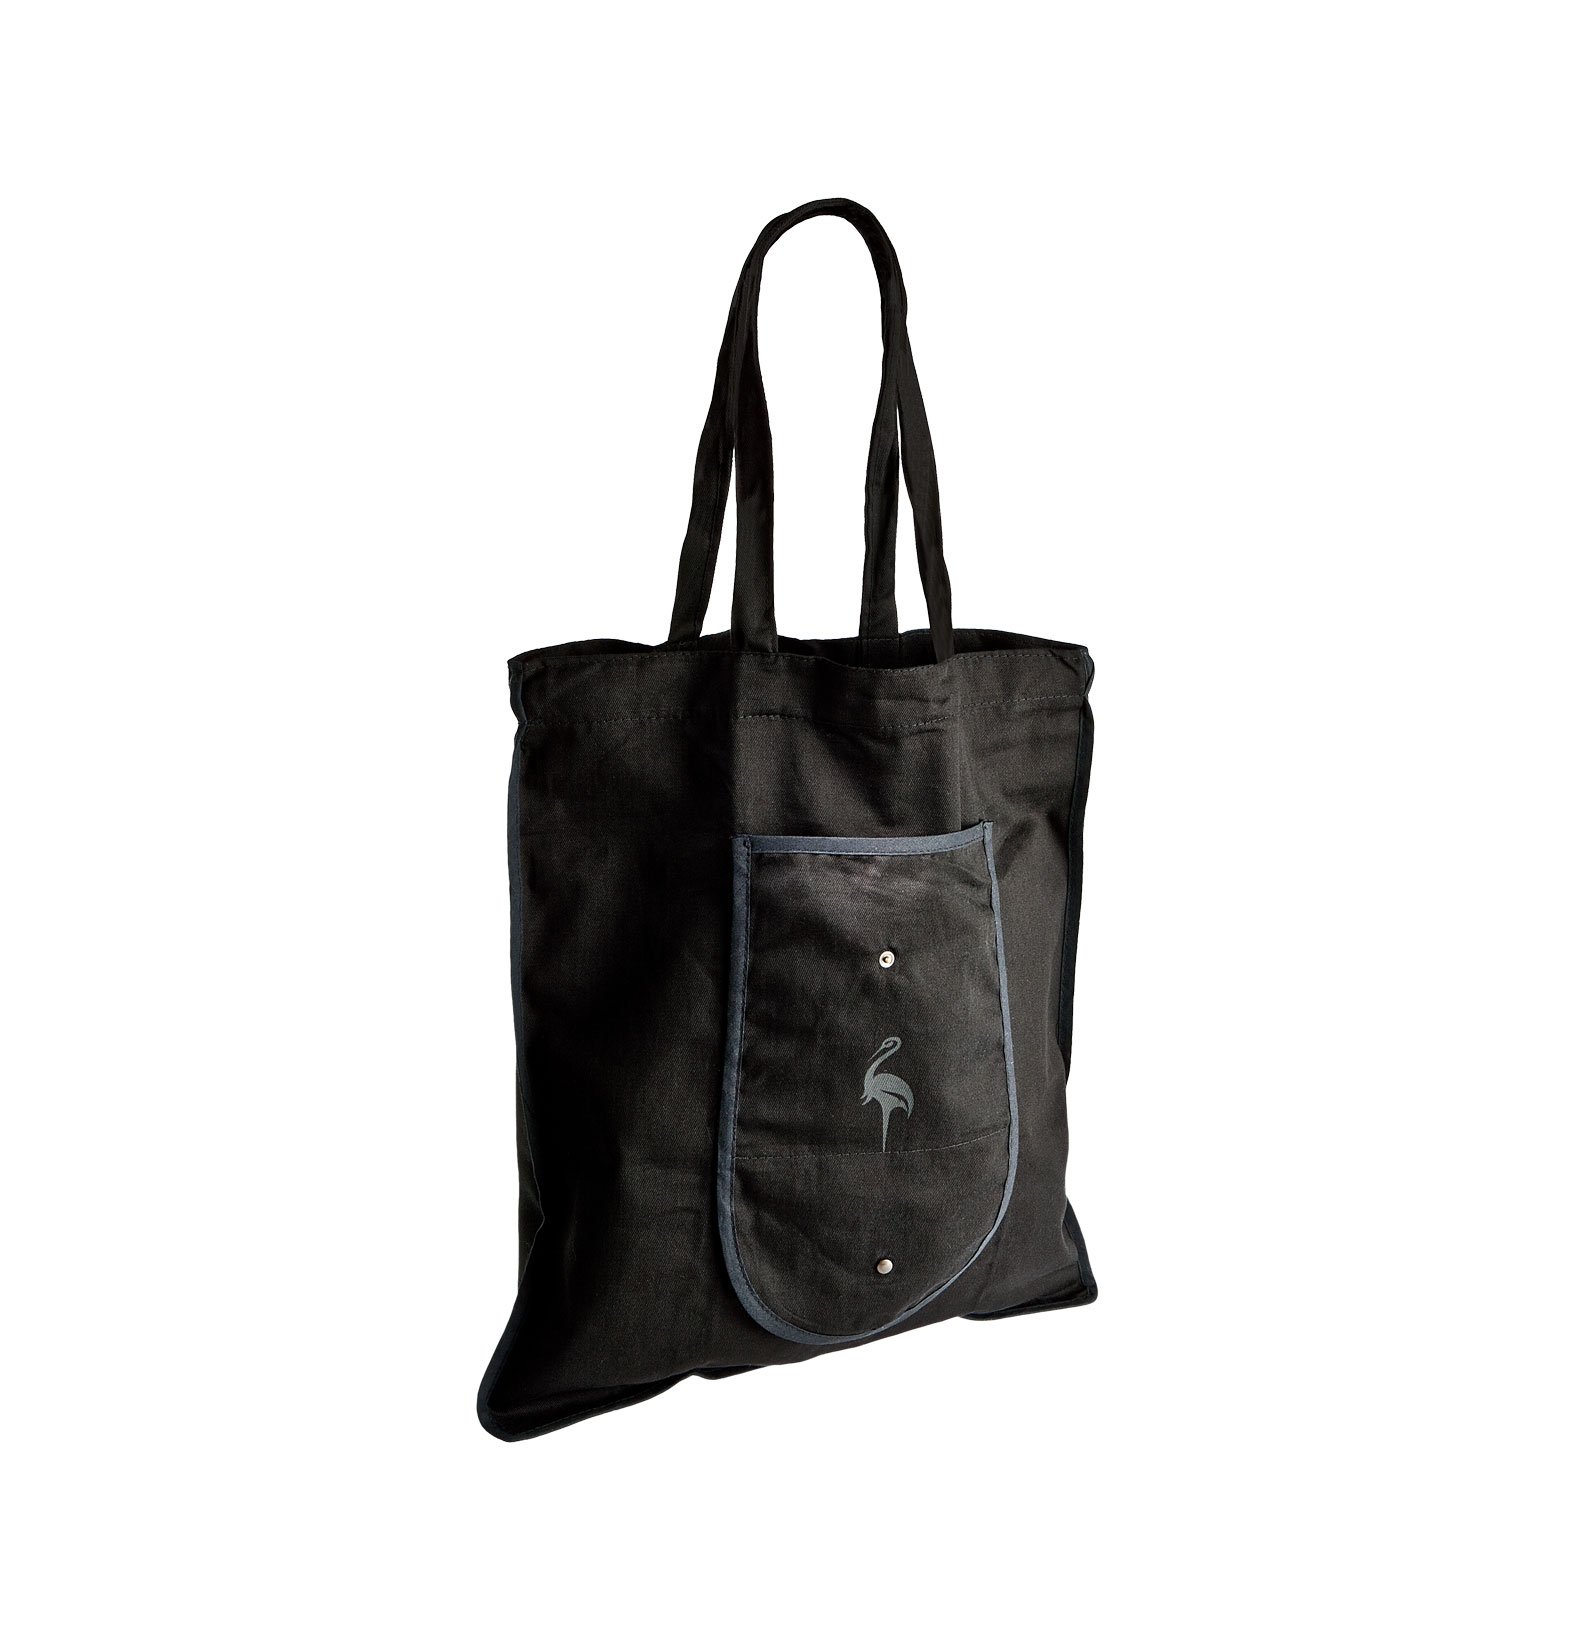 Shopping bag tascabile in cotone con 2 manici + clip a pressione